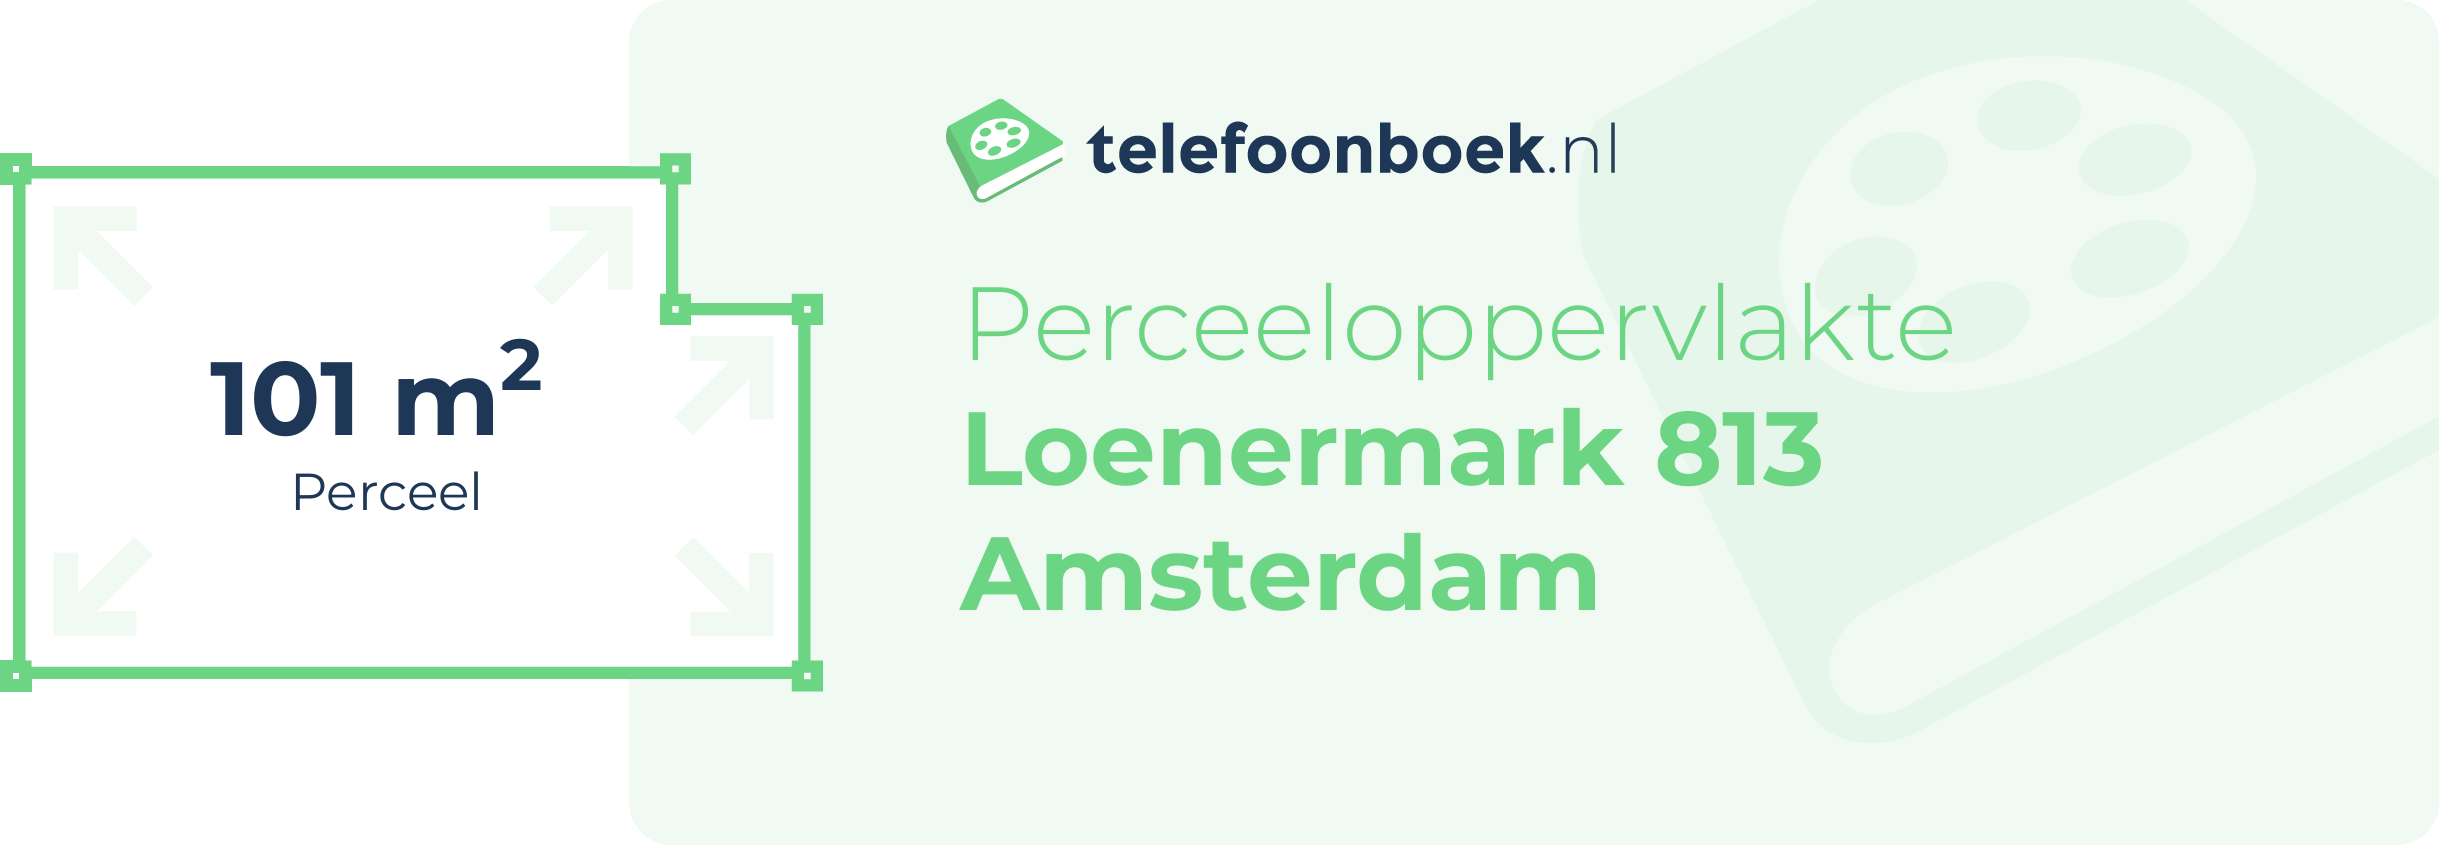 Perceeloppervlakte Loenermark 813 Amsterdam